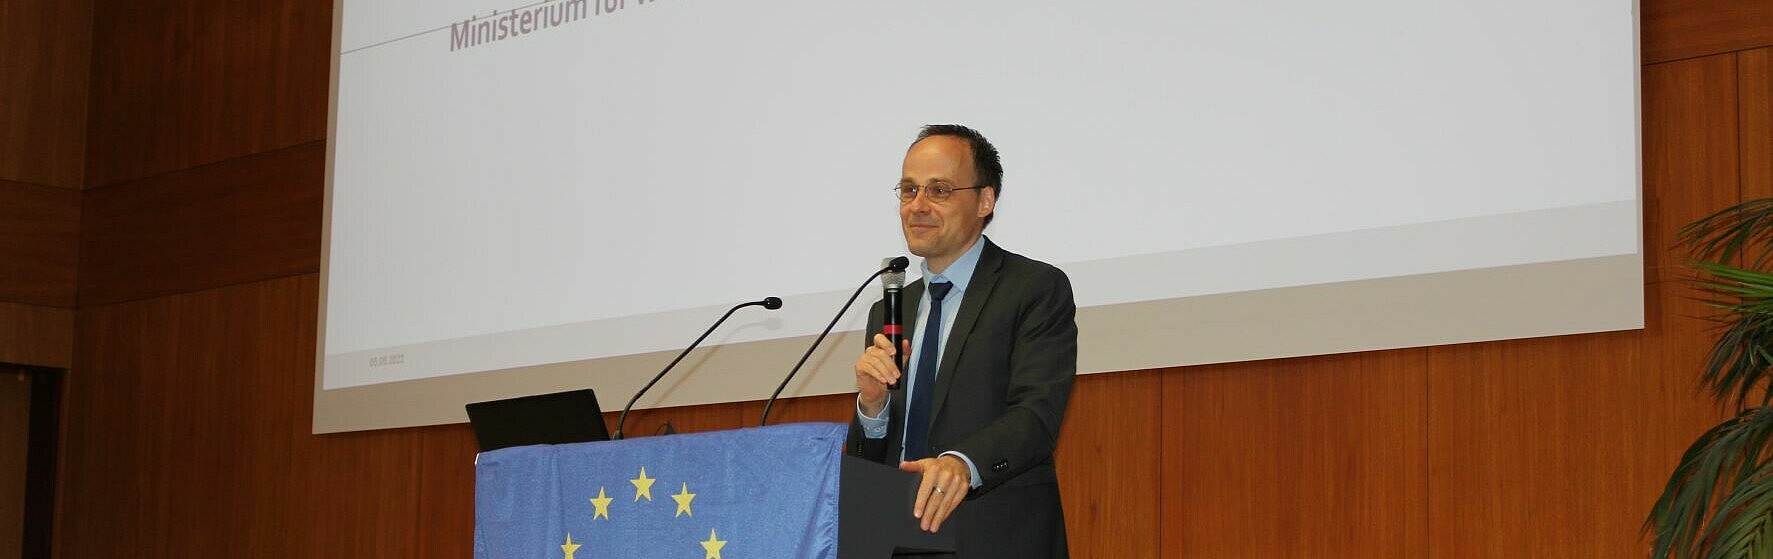 Staatssekretär Dr. Denis Alt überbrachte das Grußwort des Ministeriums für Wissenschaft und Gesundheit RLP (Bild: HWG LU)